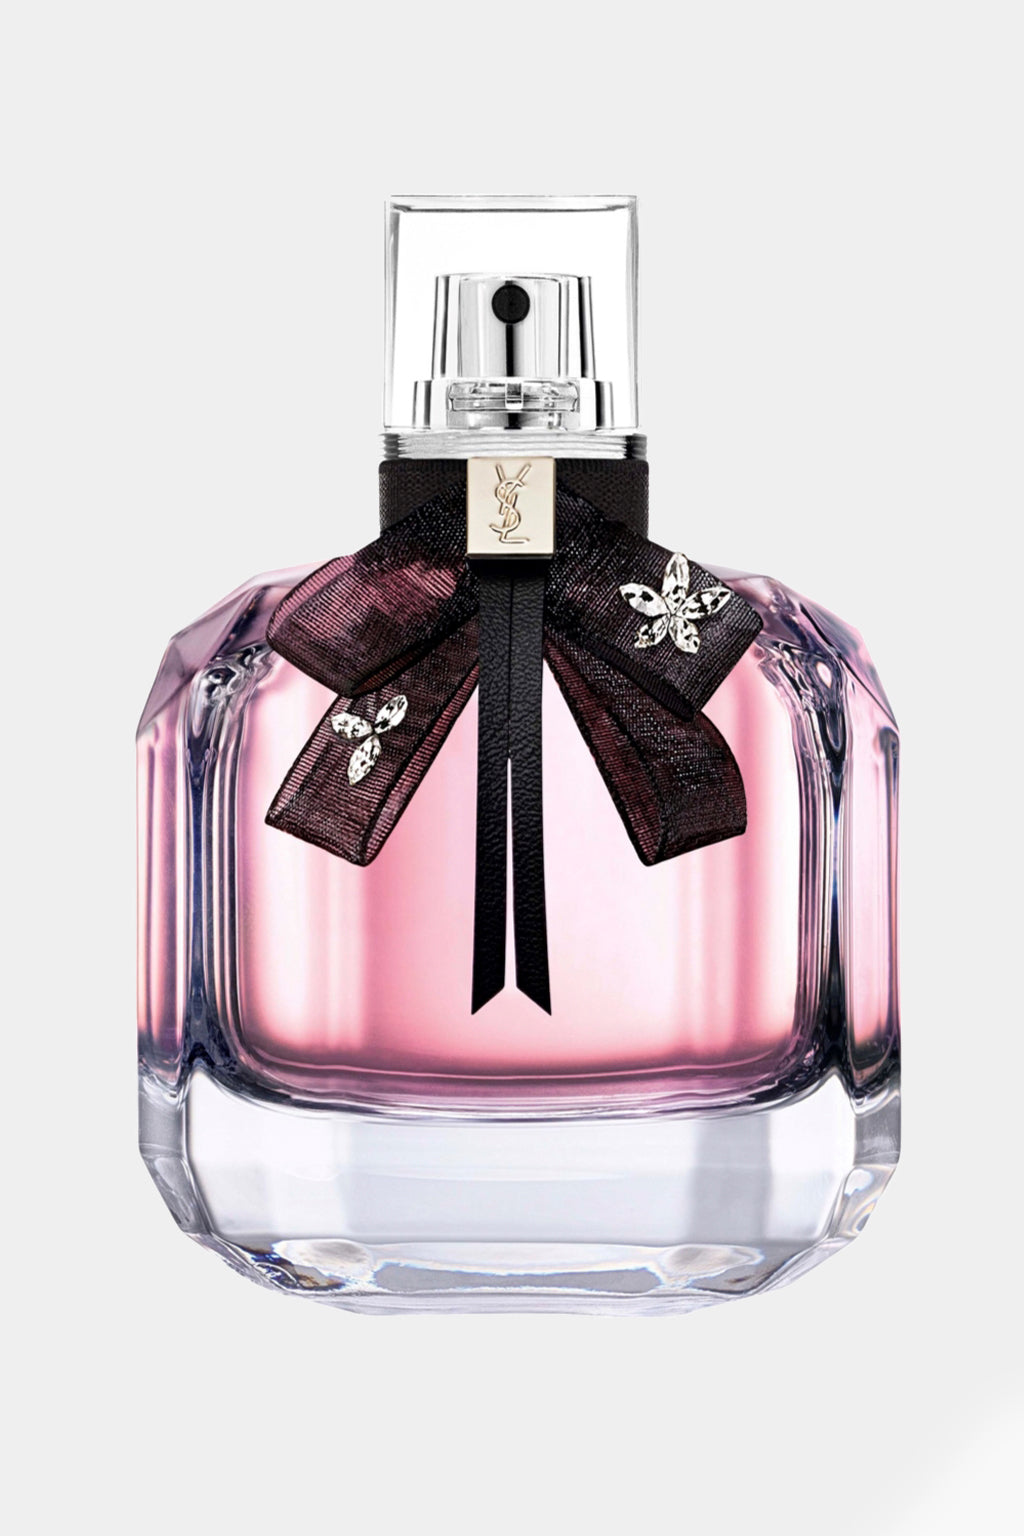 Yves Saint Laurent - Mon Paris Eau De Parfum 90ml